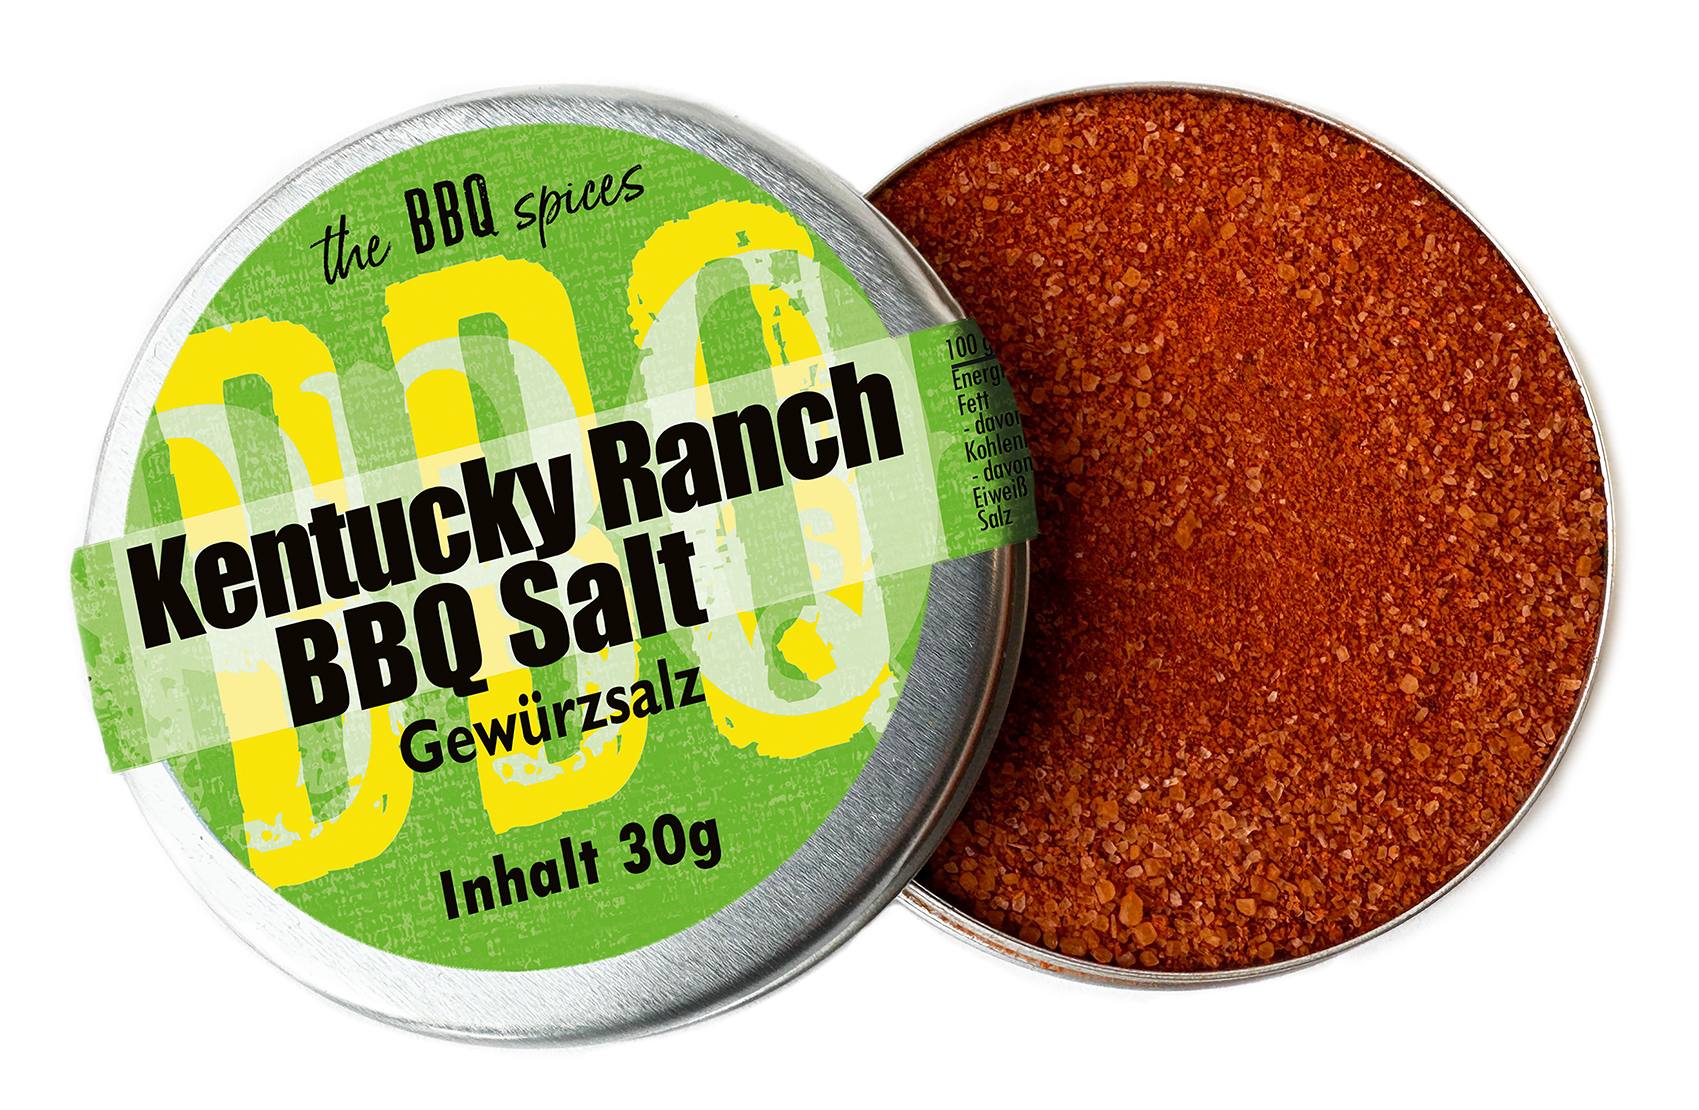 Kentucky Ranch BBQ Salt